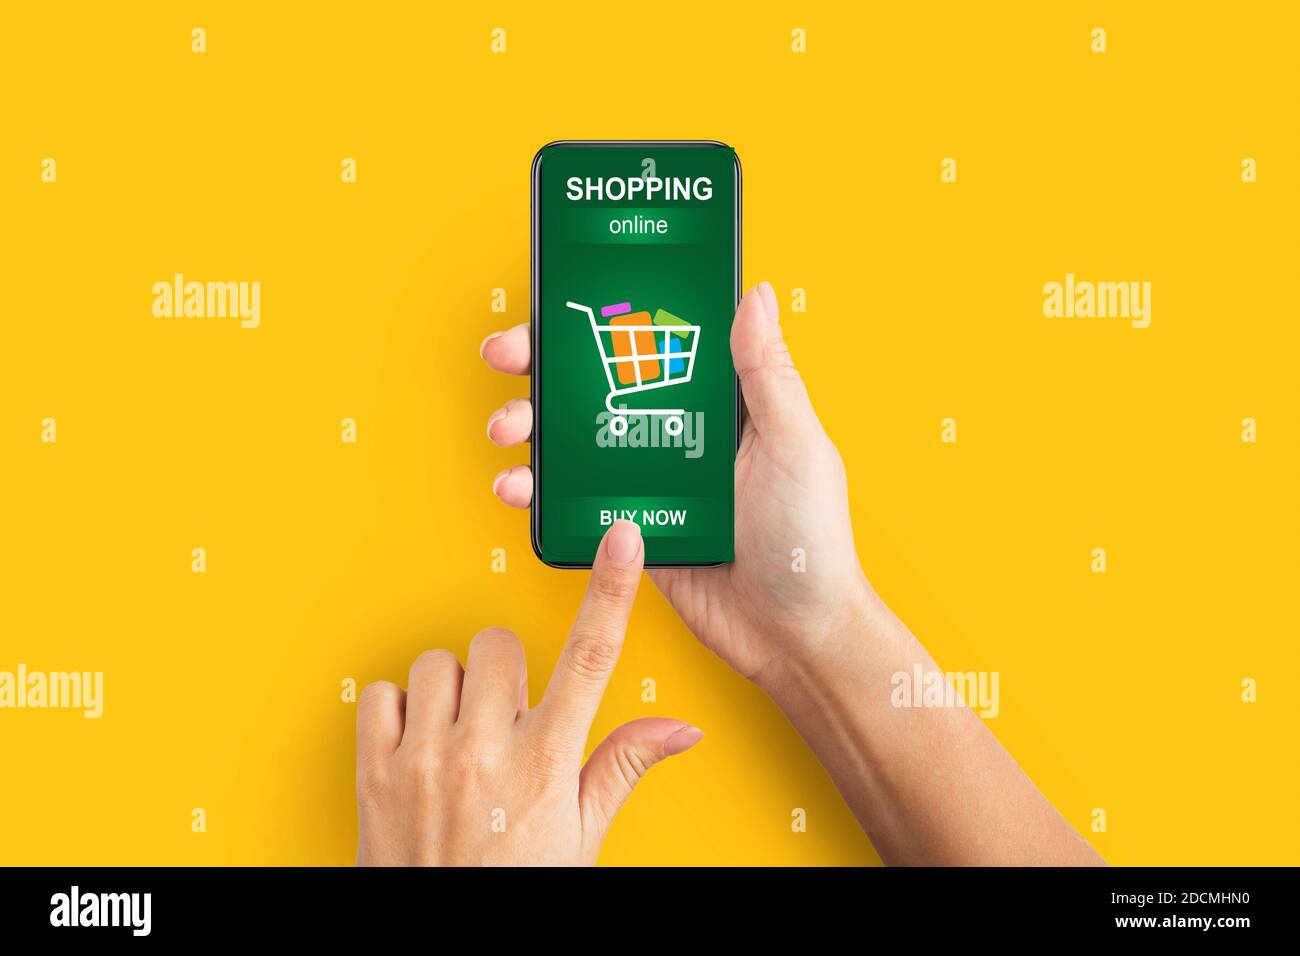 Mains de femmes avec smartphone Shopping en ligne à l'aide de l'application, fond jaune Banque D'Images